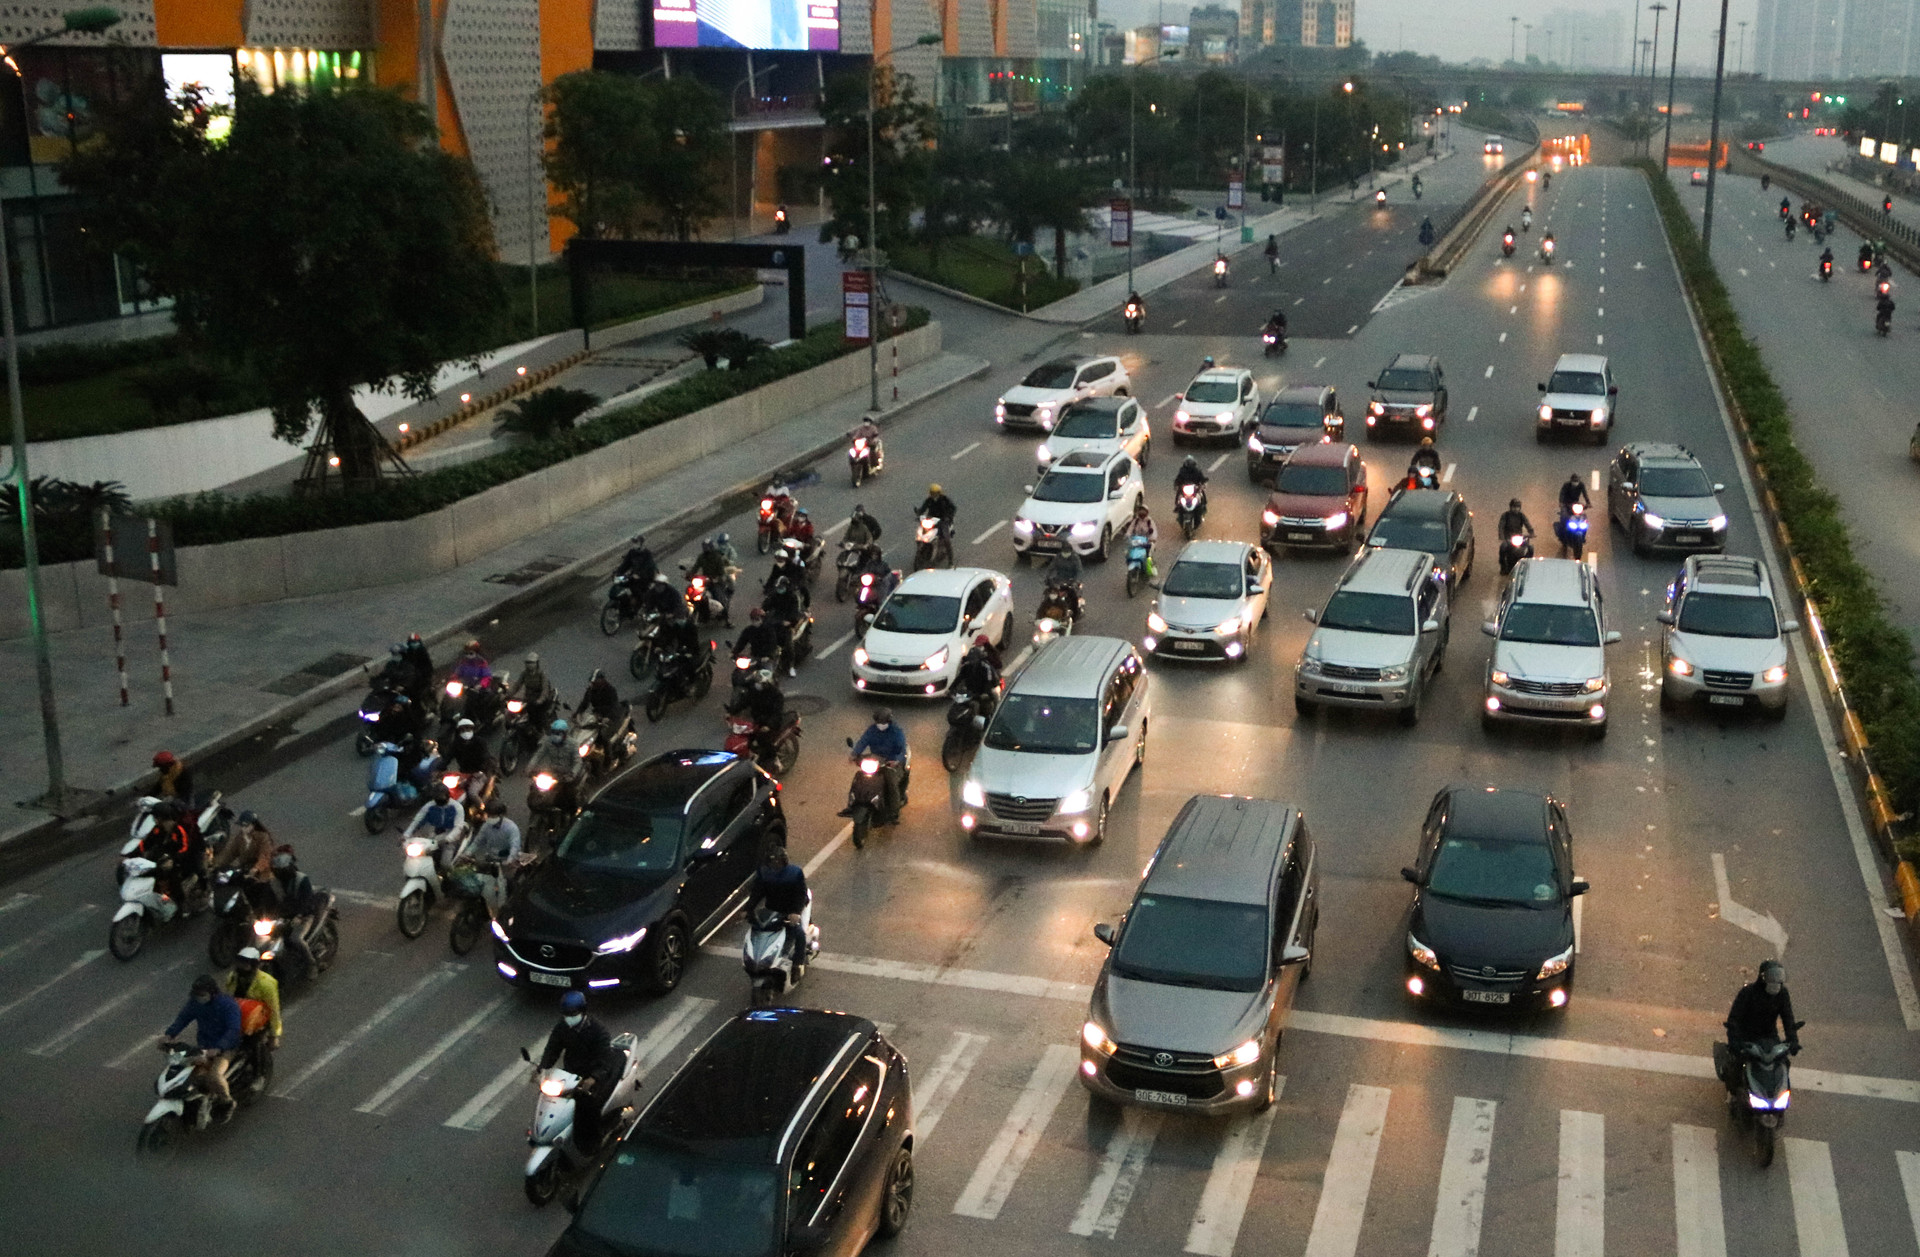 Chùm ảnh: Các tụ điểm công cộng tại Hà Nội dần trở nên đông đúc sau một tuần thực hiện cách ly xã hội - Ảnh 12.